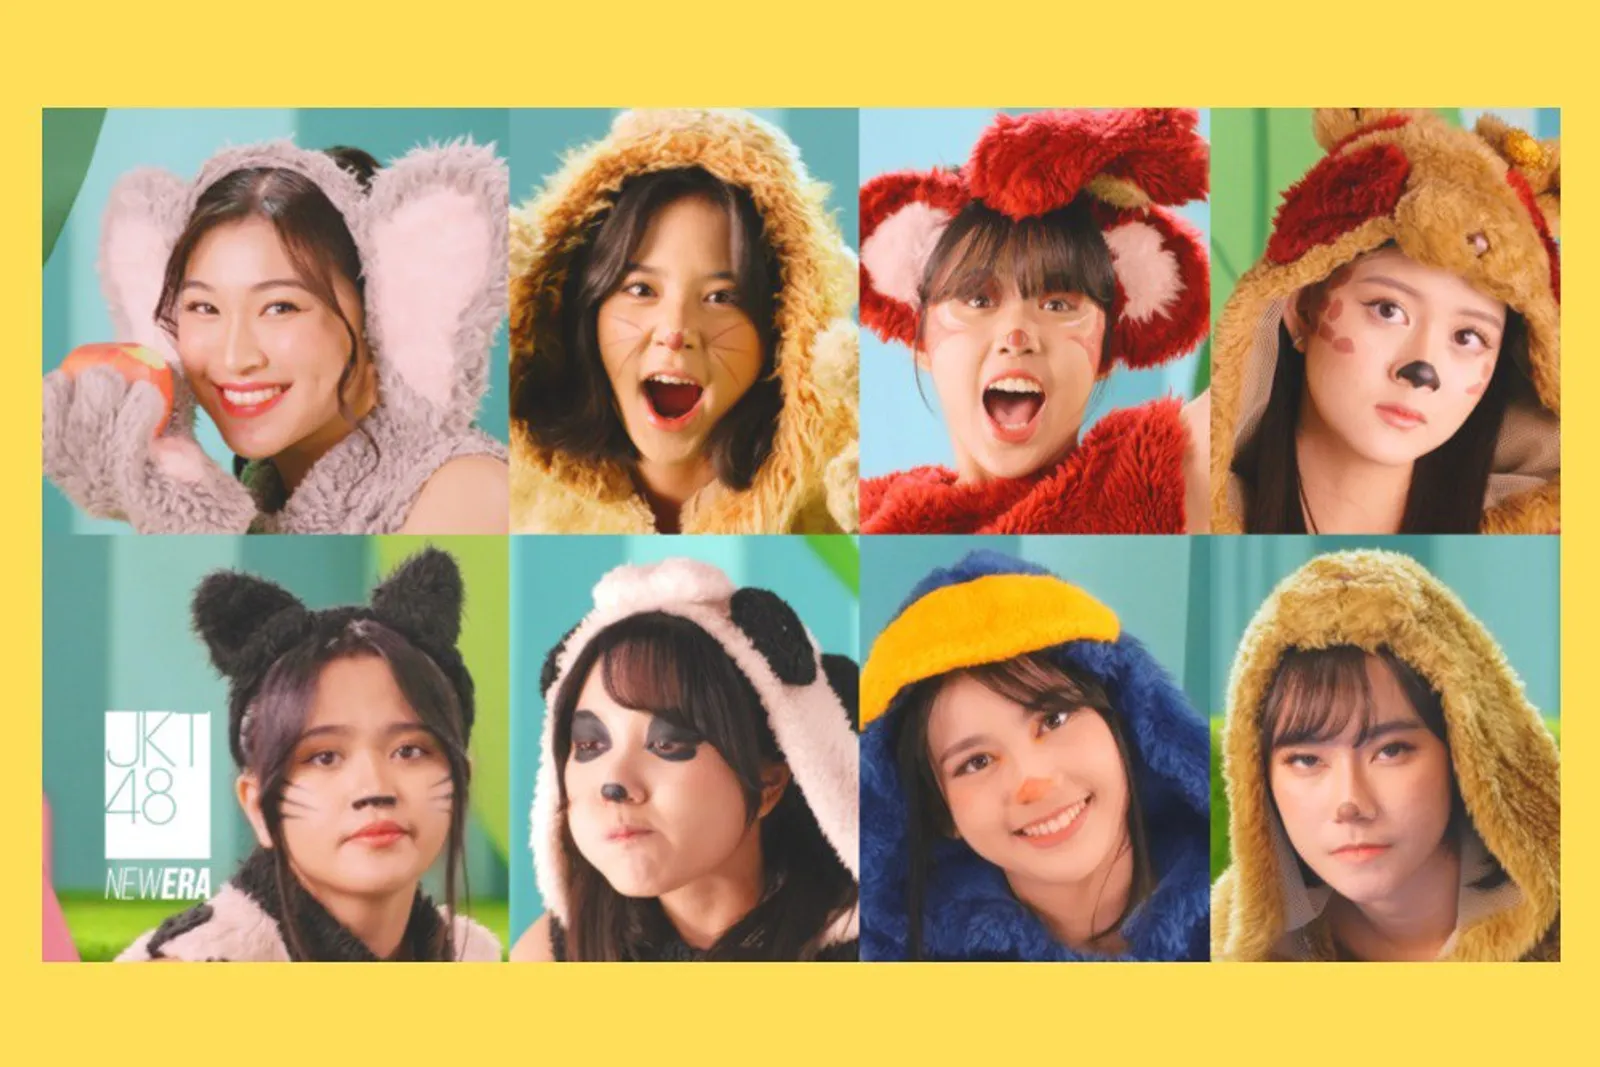 JKT48 Rilis Video Klip Lagu “Kebun Binatang Saat Hujan” Versi Terbaru